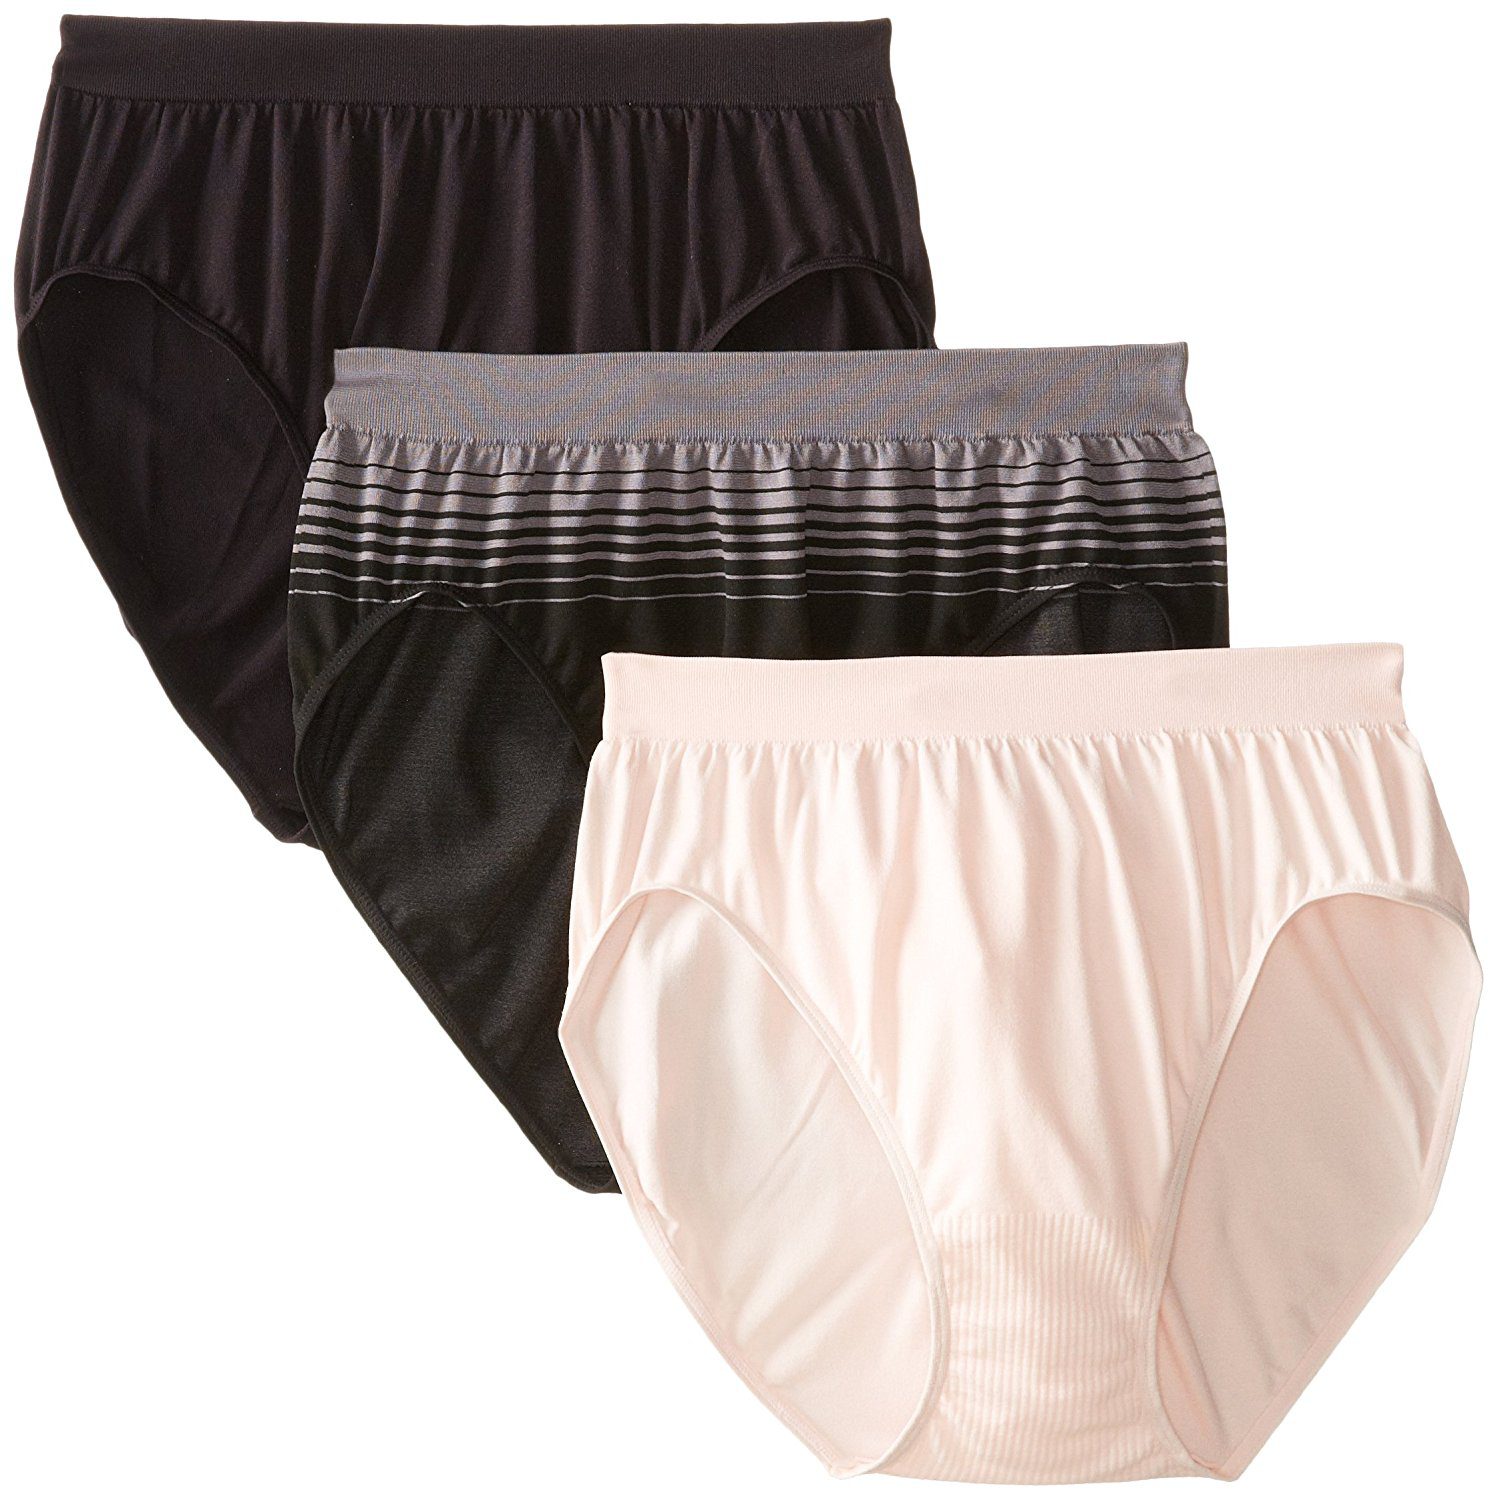 Bali Womens Comfort Revolution Microfiber Hi-Cut Panty 3-Pack - Apparel  Direct Distributor